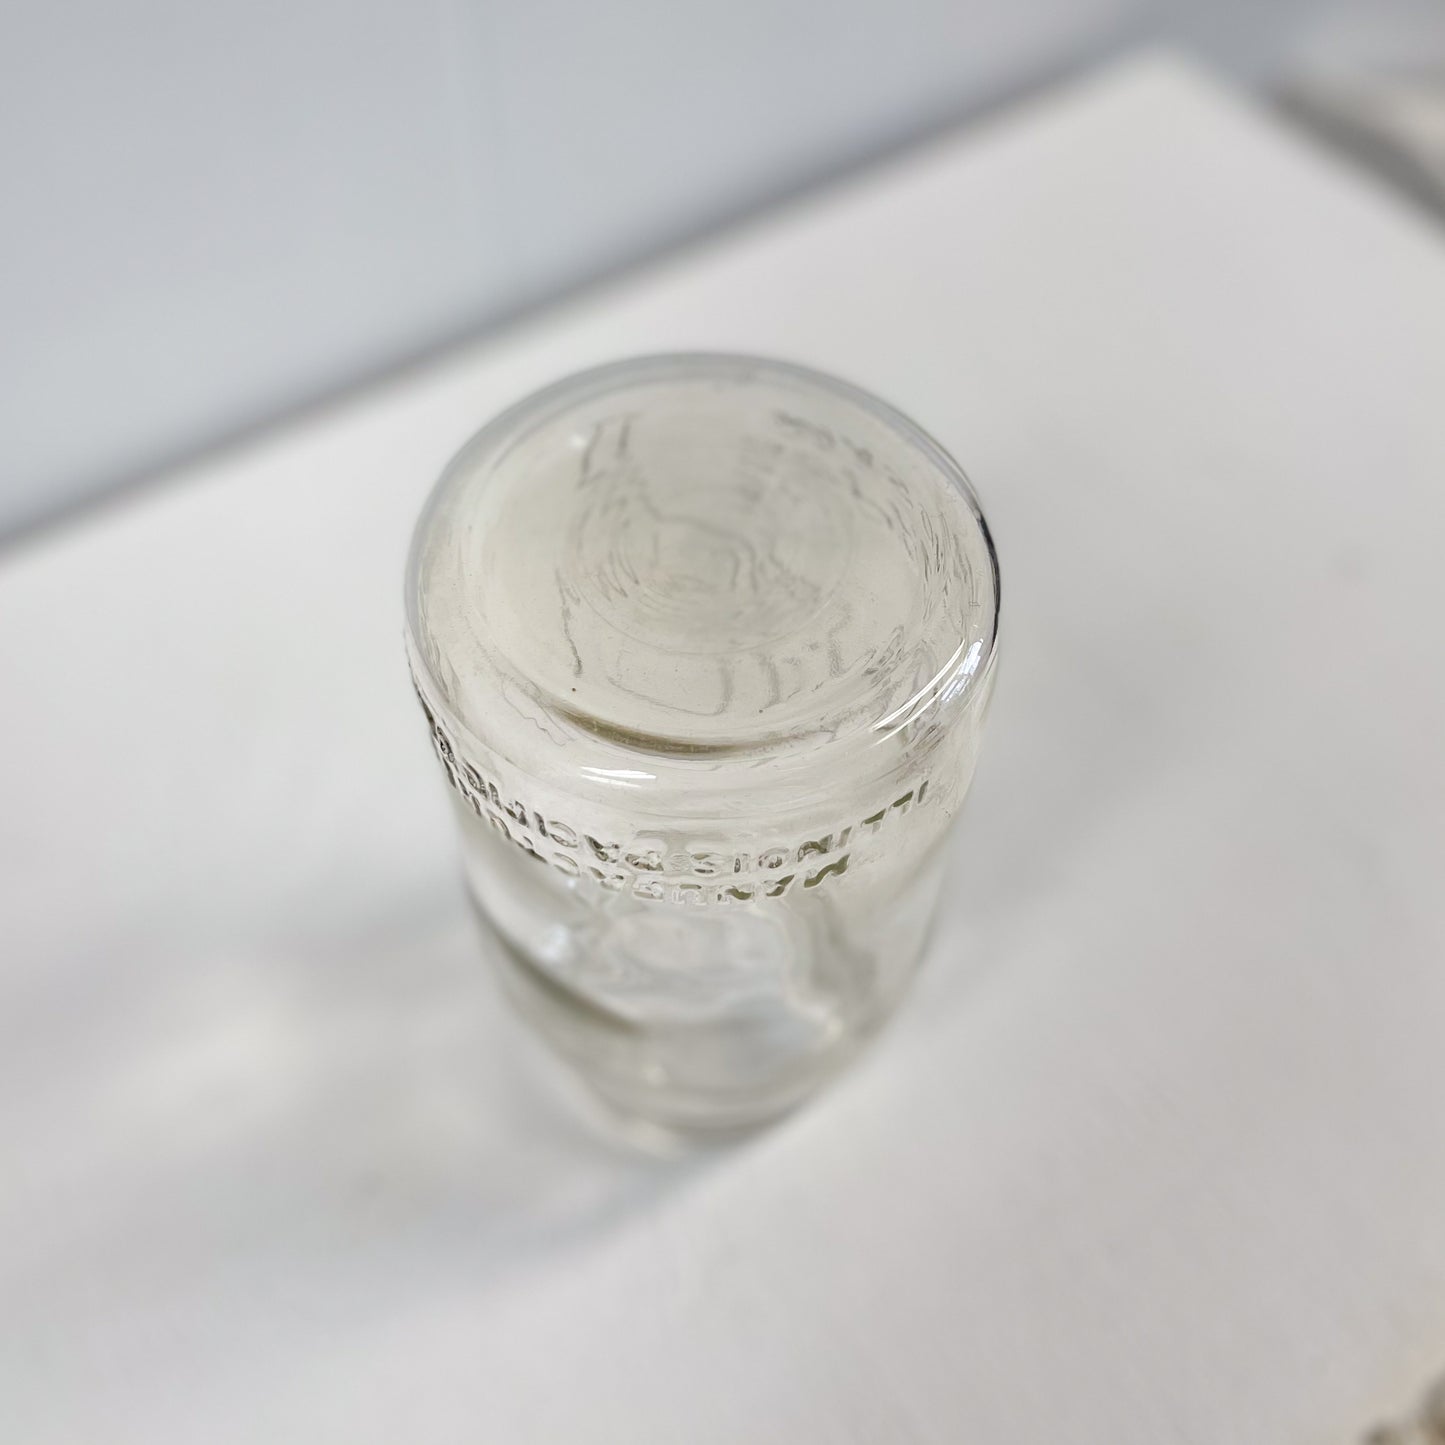 Presto Supreme Quart Mason Jar by Illinois Pacific Glass Corp